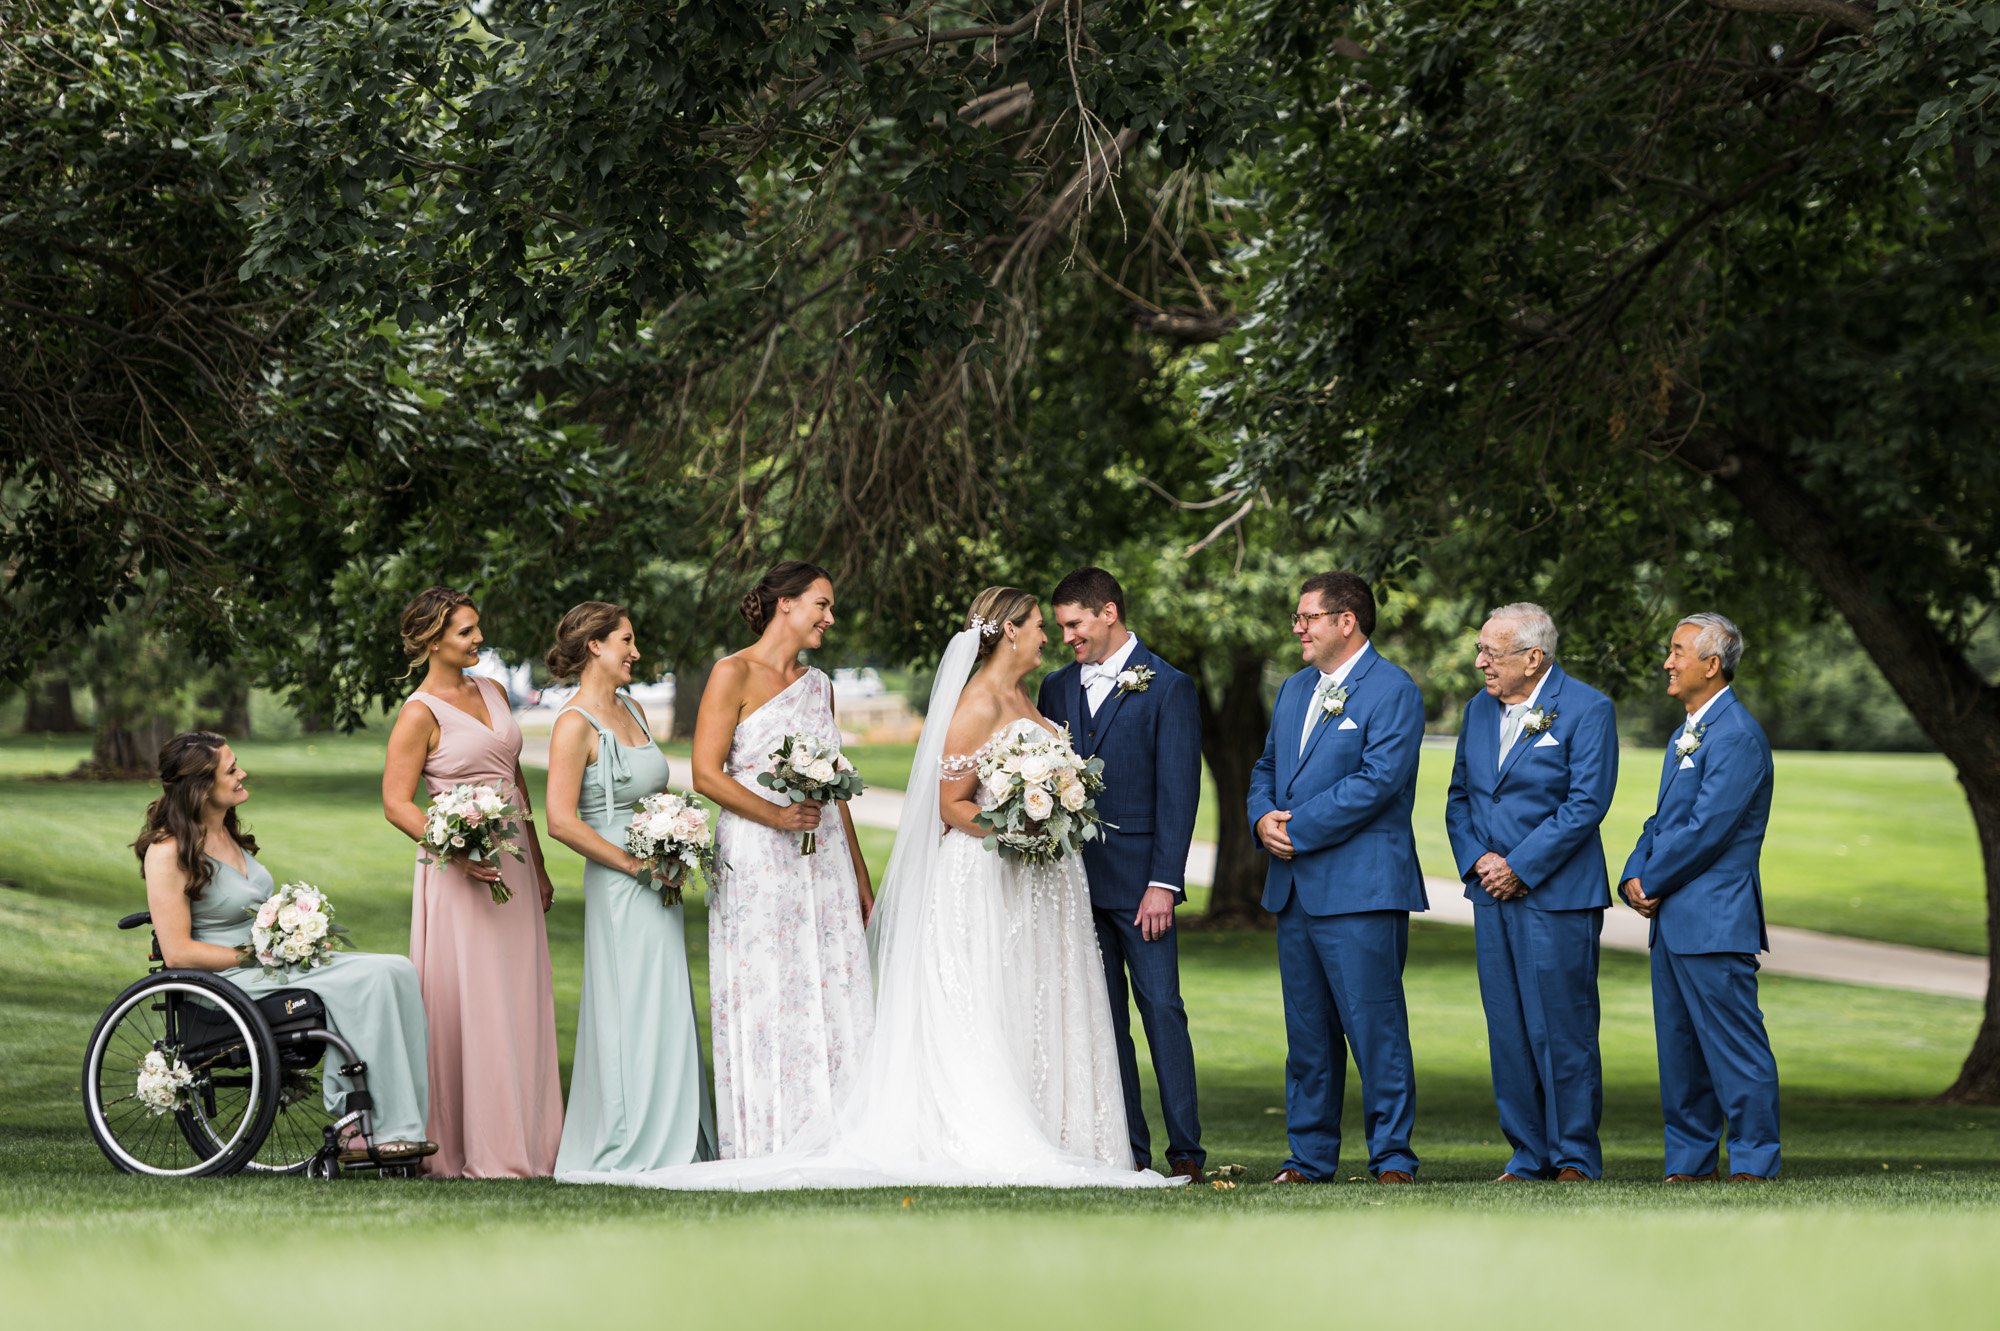 wellshire-event-center-golf-course-bride-groom-epic-family-love-denver-colorado-wedding-photographer-website (40).jpg